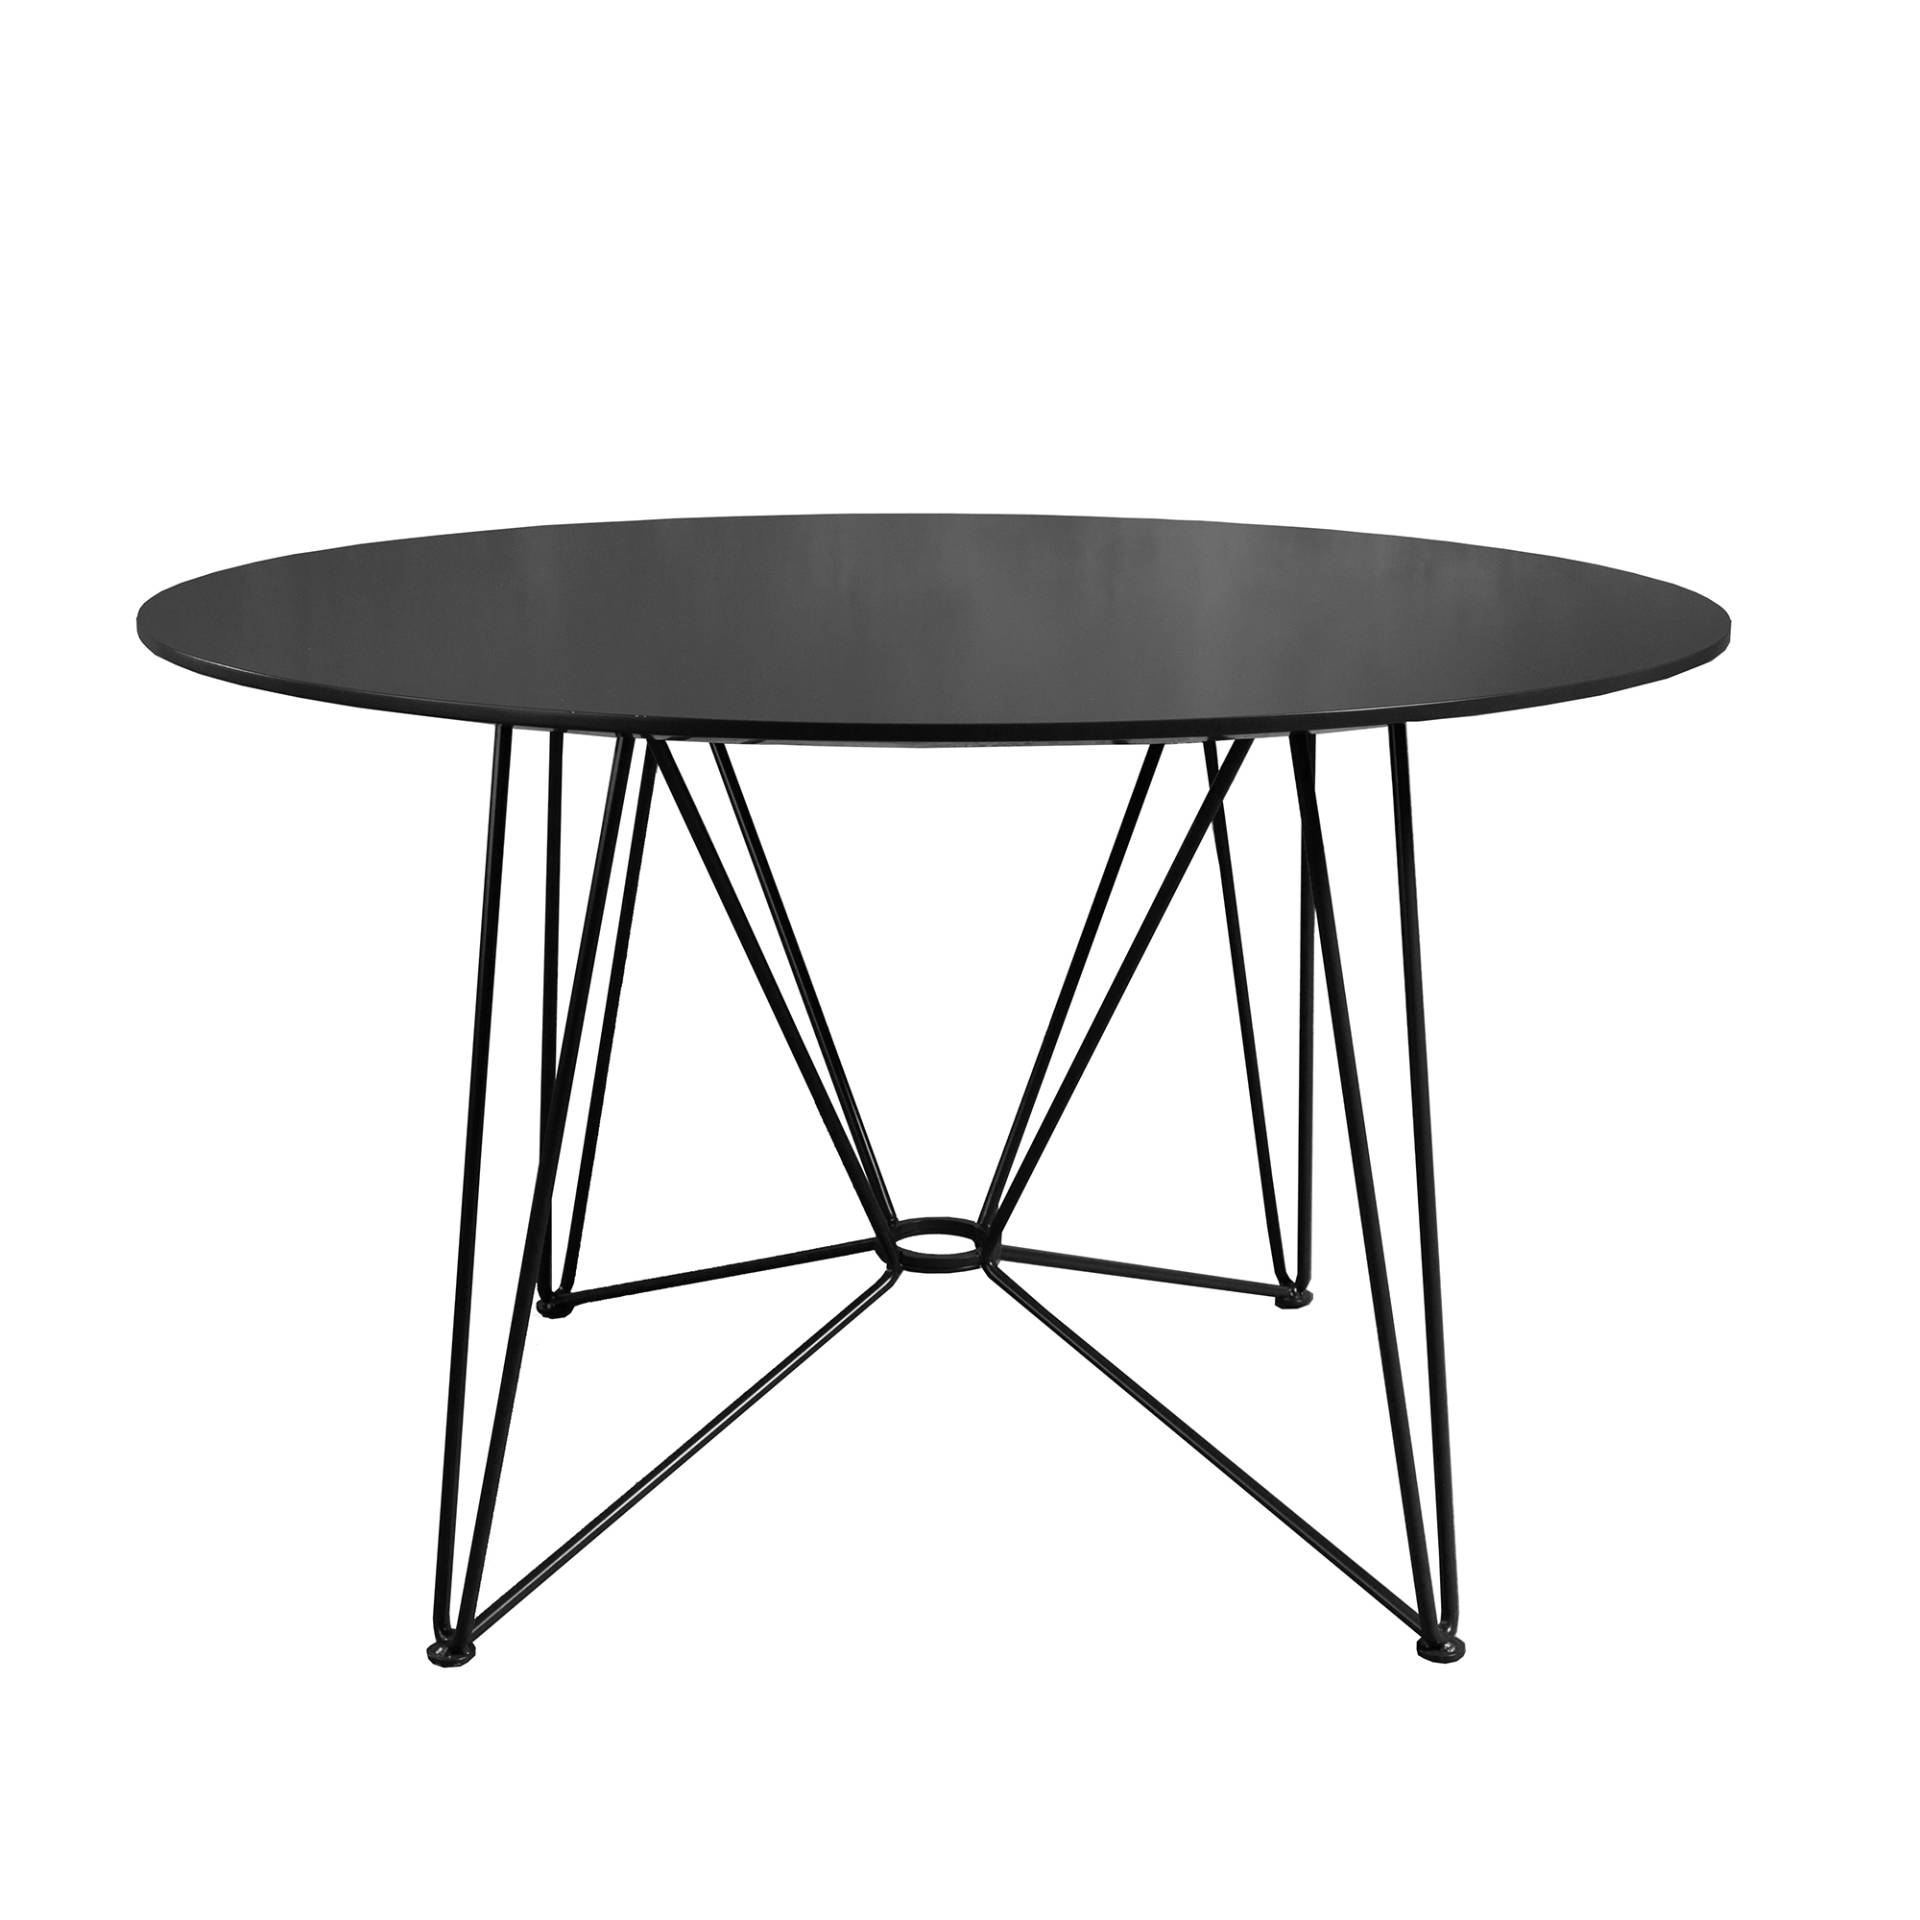 Acapulco Design - The Ring Table Esstisch HPL Ø120cm - schwarz/Tischplatte HPL/Gestell Stahl pulverbeschichtet/HxØ 74x120cm von Acapulco Design